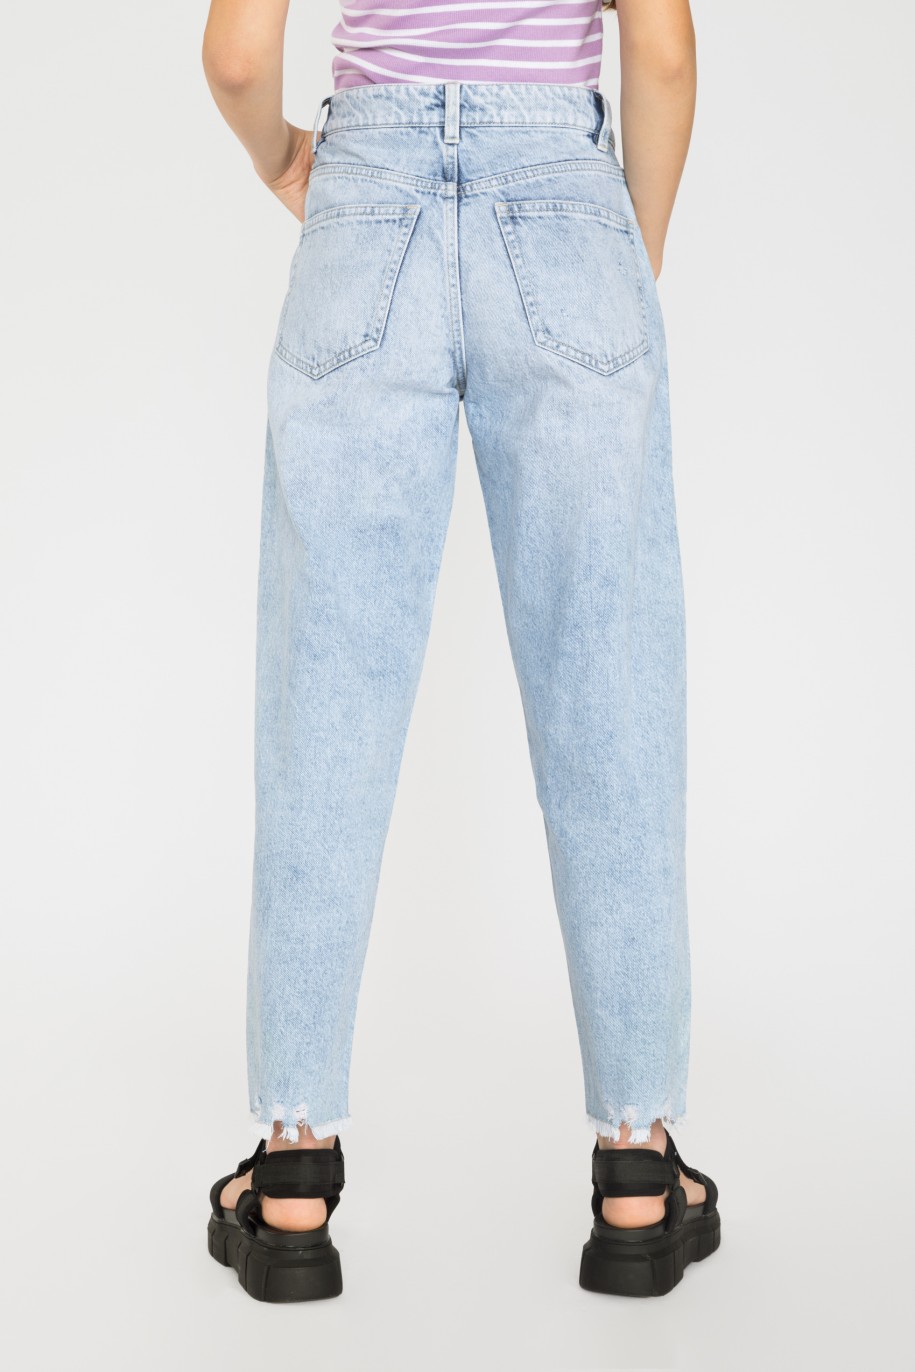 Jasnoniebieskie jeansy z przetarciami - 35673